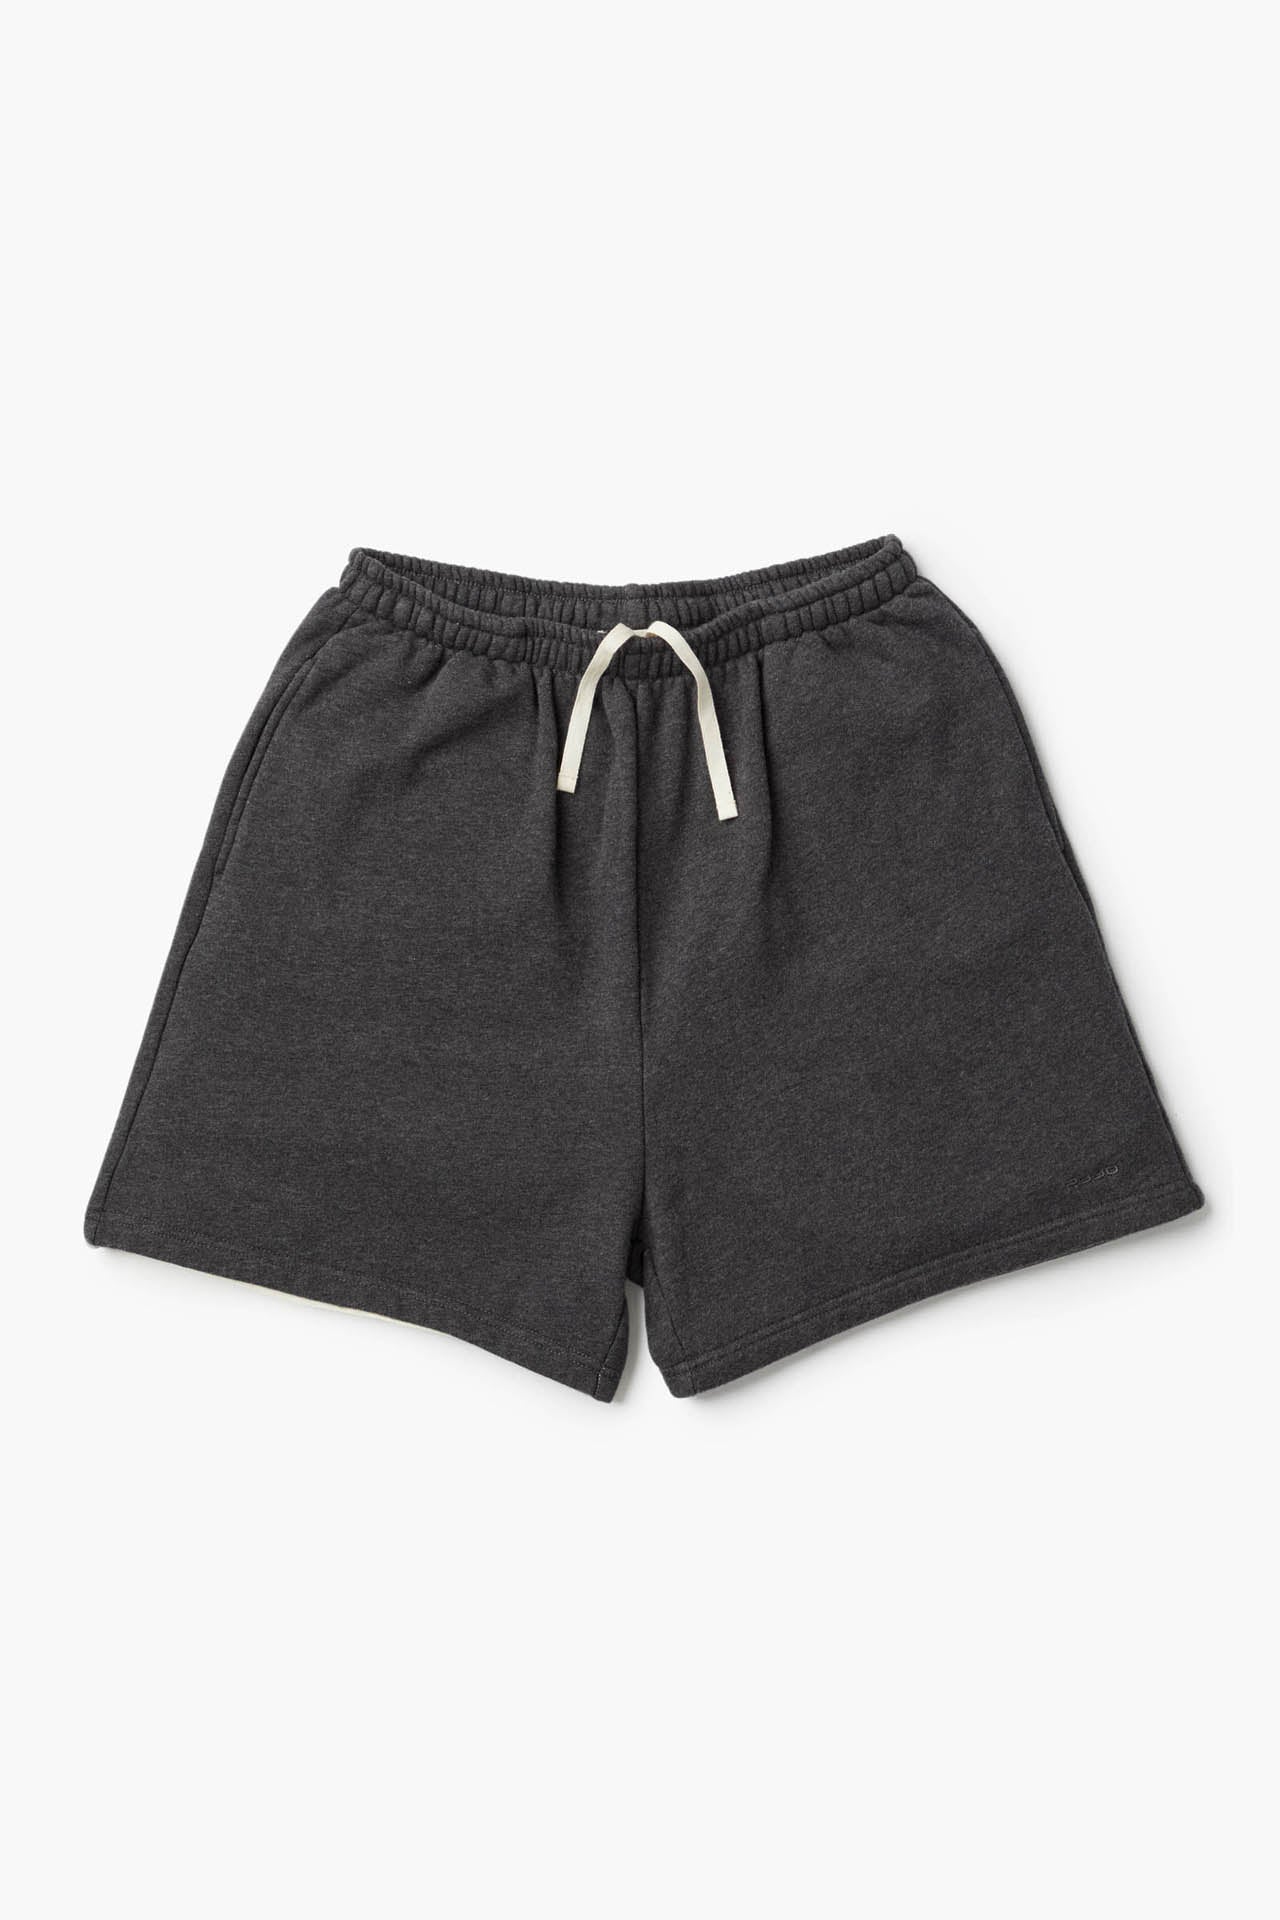 Unisex Sweat Shorts